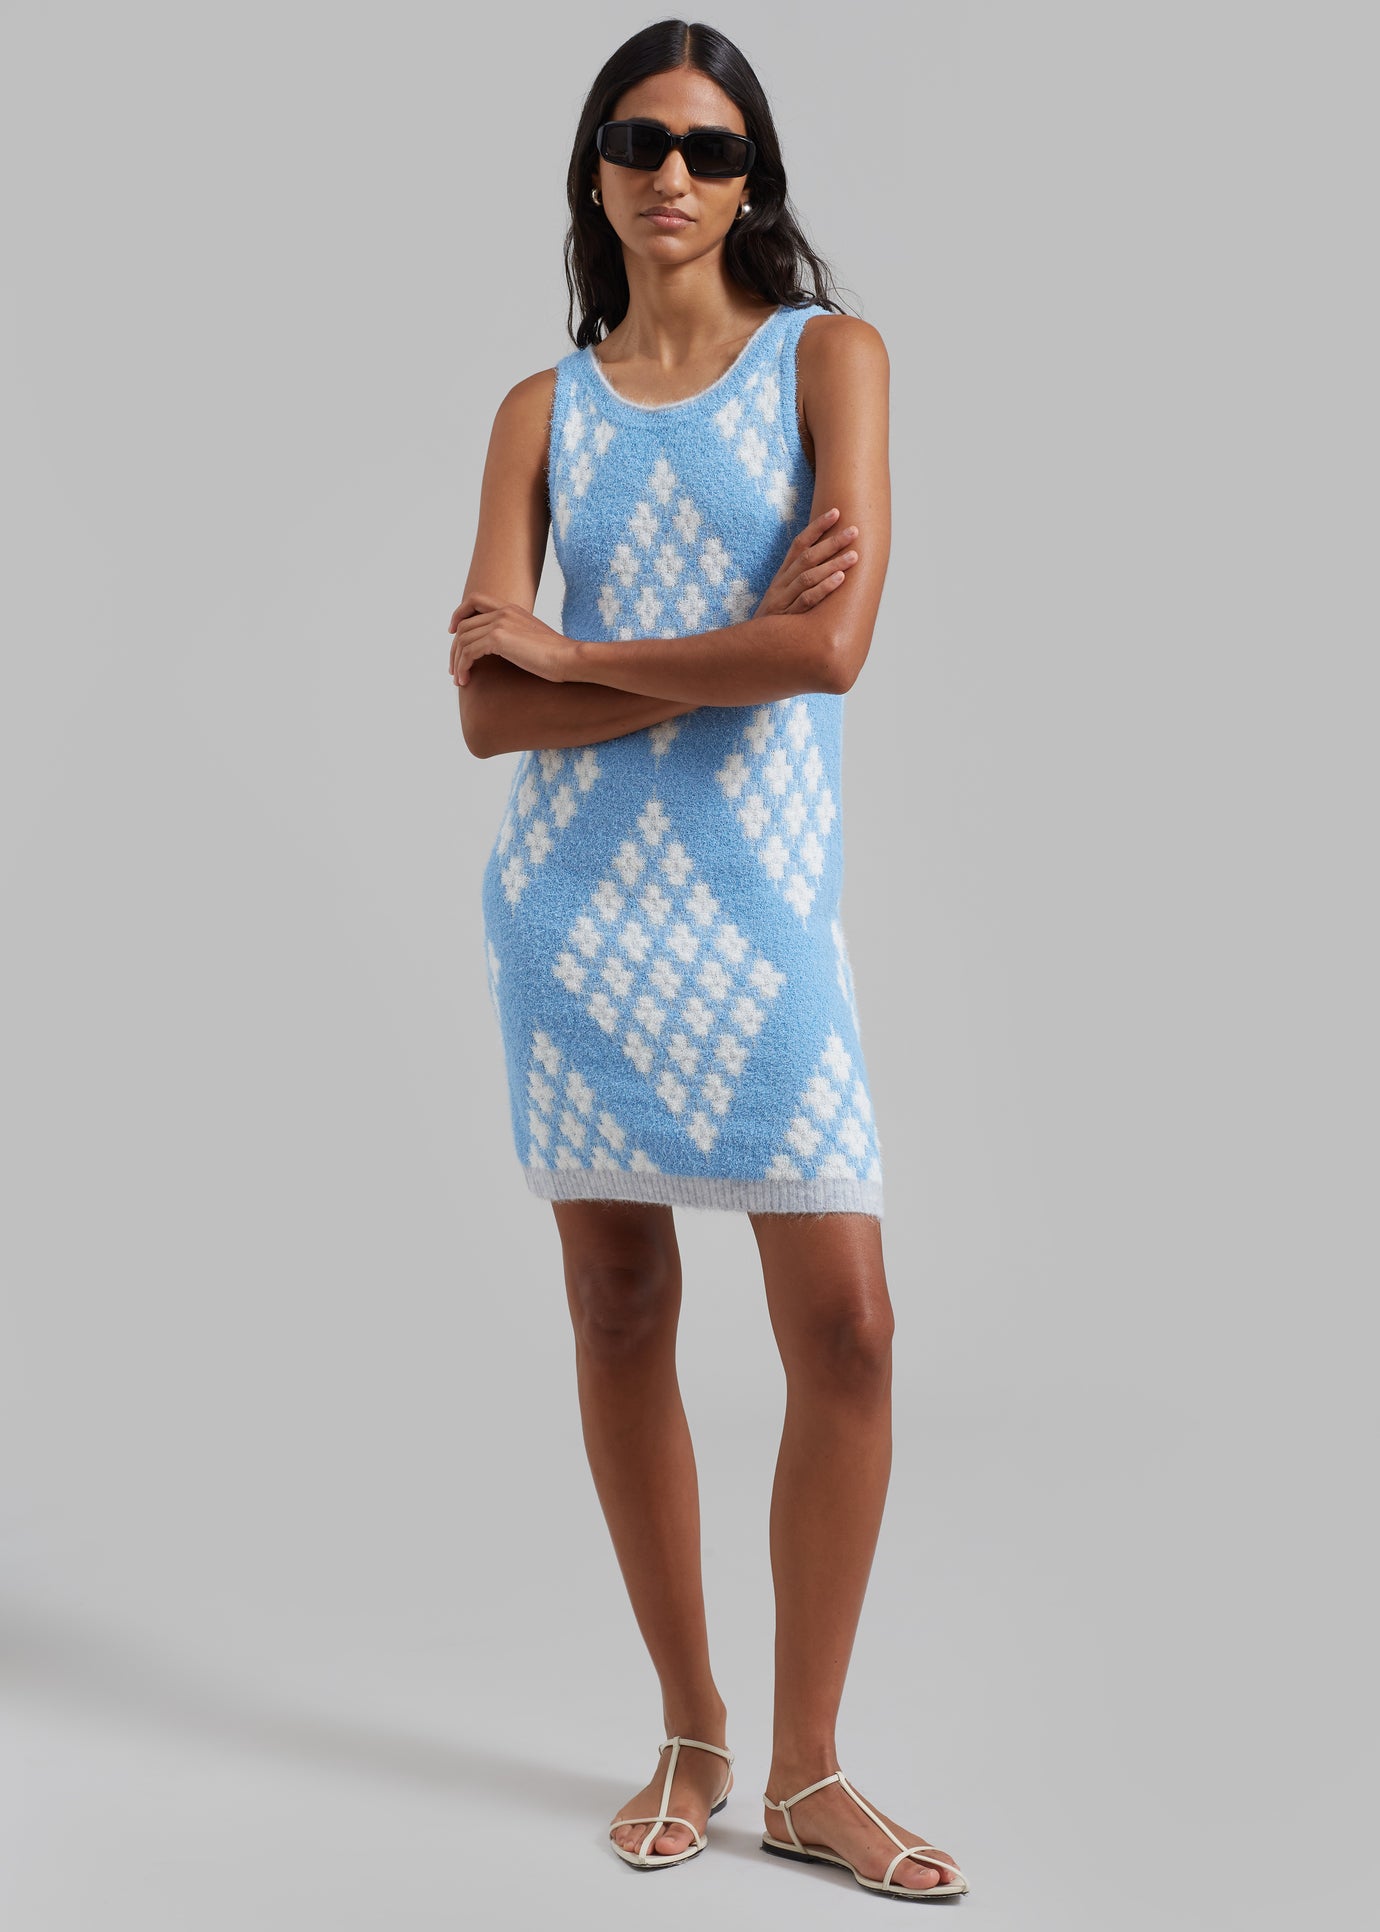 3.1 Phillip Lim Argyle Jacquard Sleeveless Mini Dress - Hudson Blue/Multi